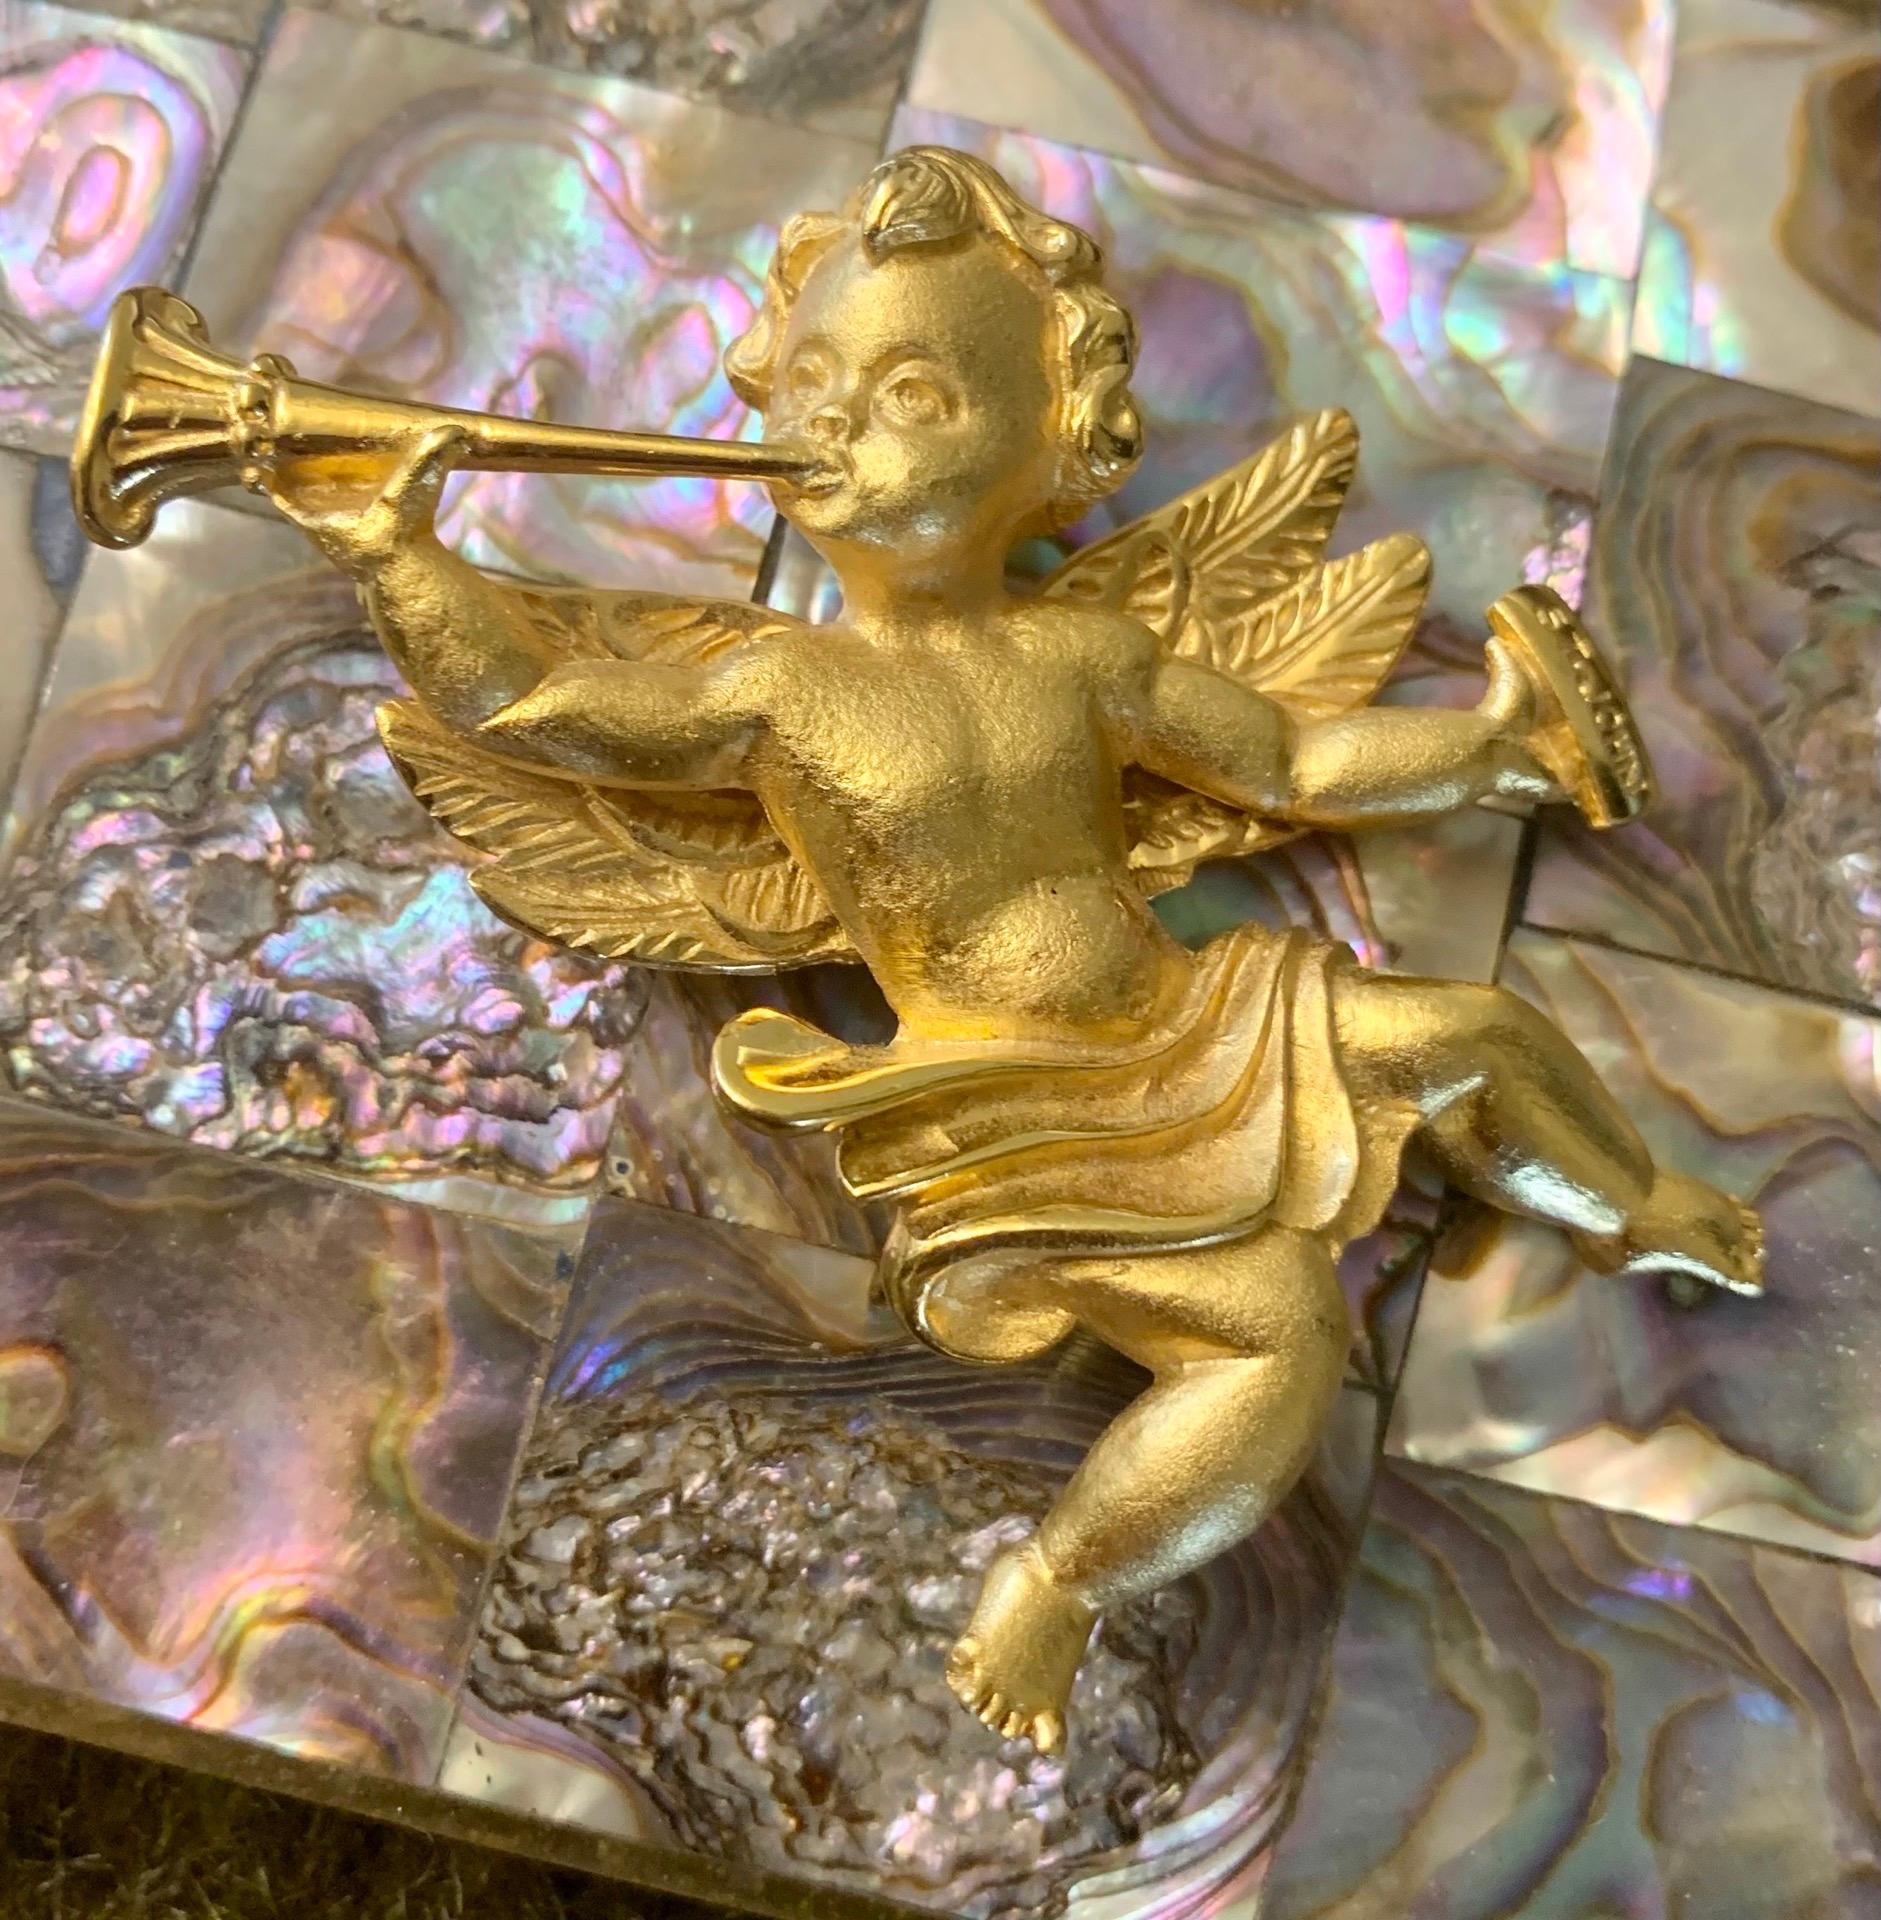 Ein wunderschönes Schmuckstück von St. John, für alle, die an Engel glauben oder die Vorstellung von ihnen mögen. St. John stellt linmited Editionen von Schmuckstücken her. Diese Cherub-Engel-Anstecknadel war sehr begehrt und ausverkauft. Die Nadel